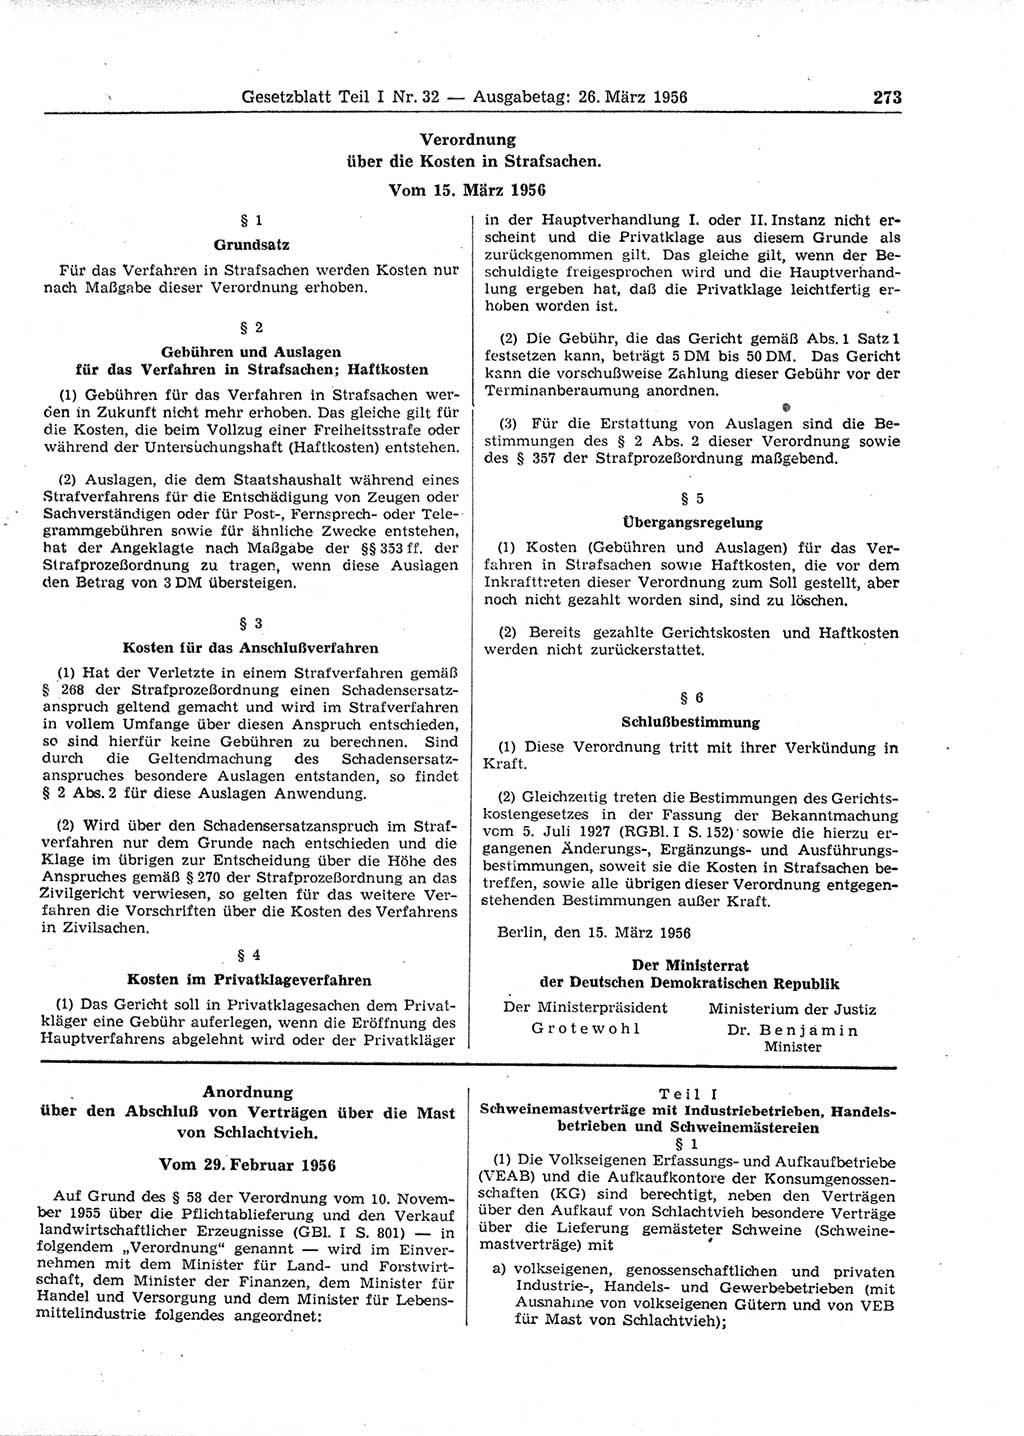 Gesetzblatt (GBl.) der Deutschen Demokratischen Republik (DDR) Teil Ⅰ 1956, Seite 273 (GBl. DDR Ⅰ 1956, S. 273)